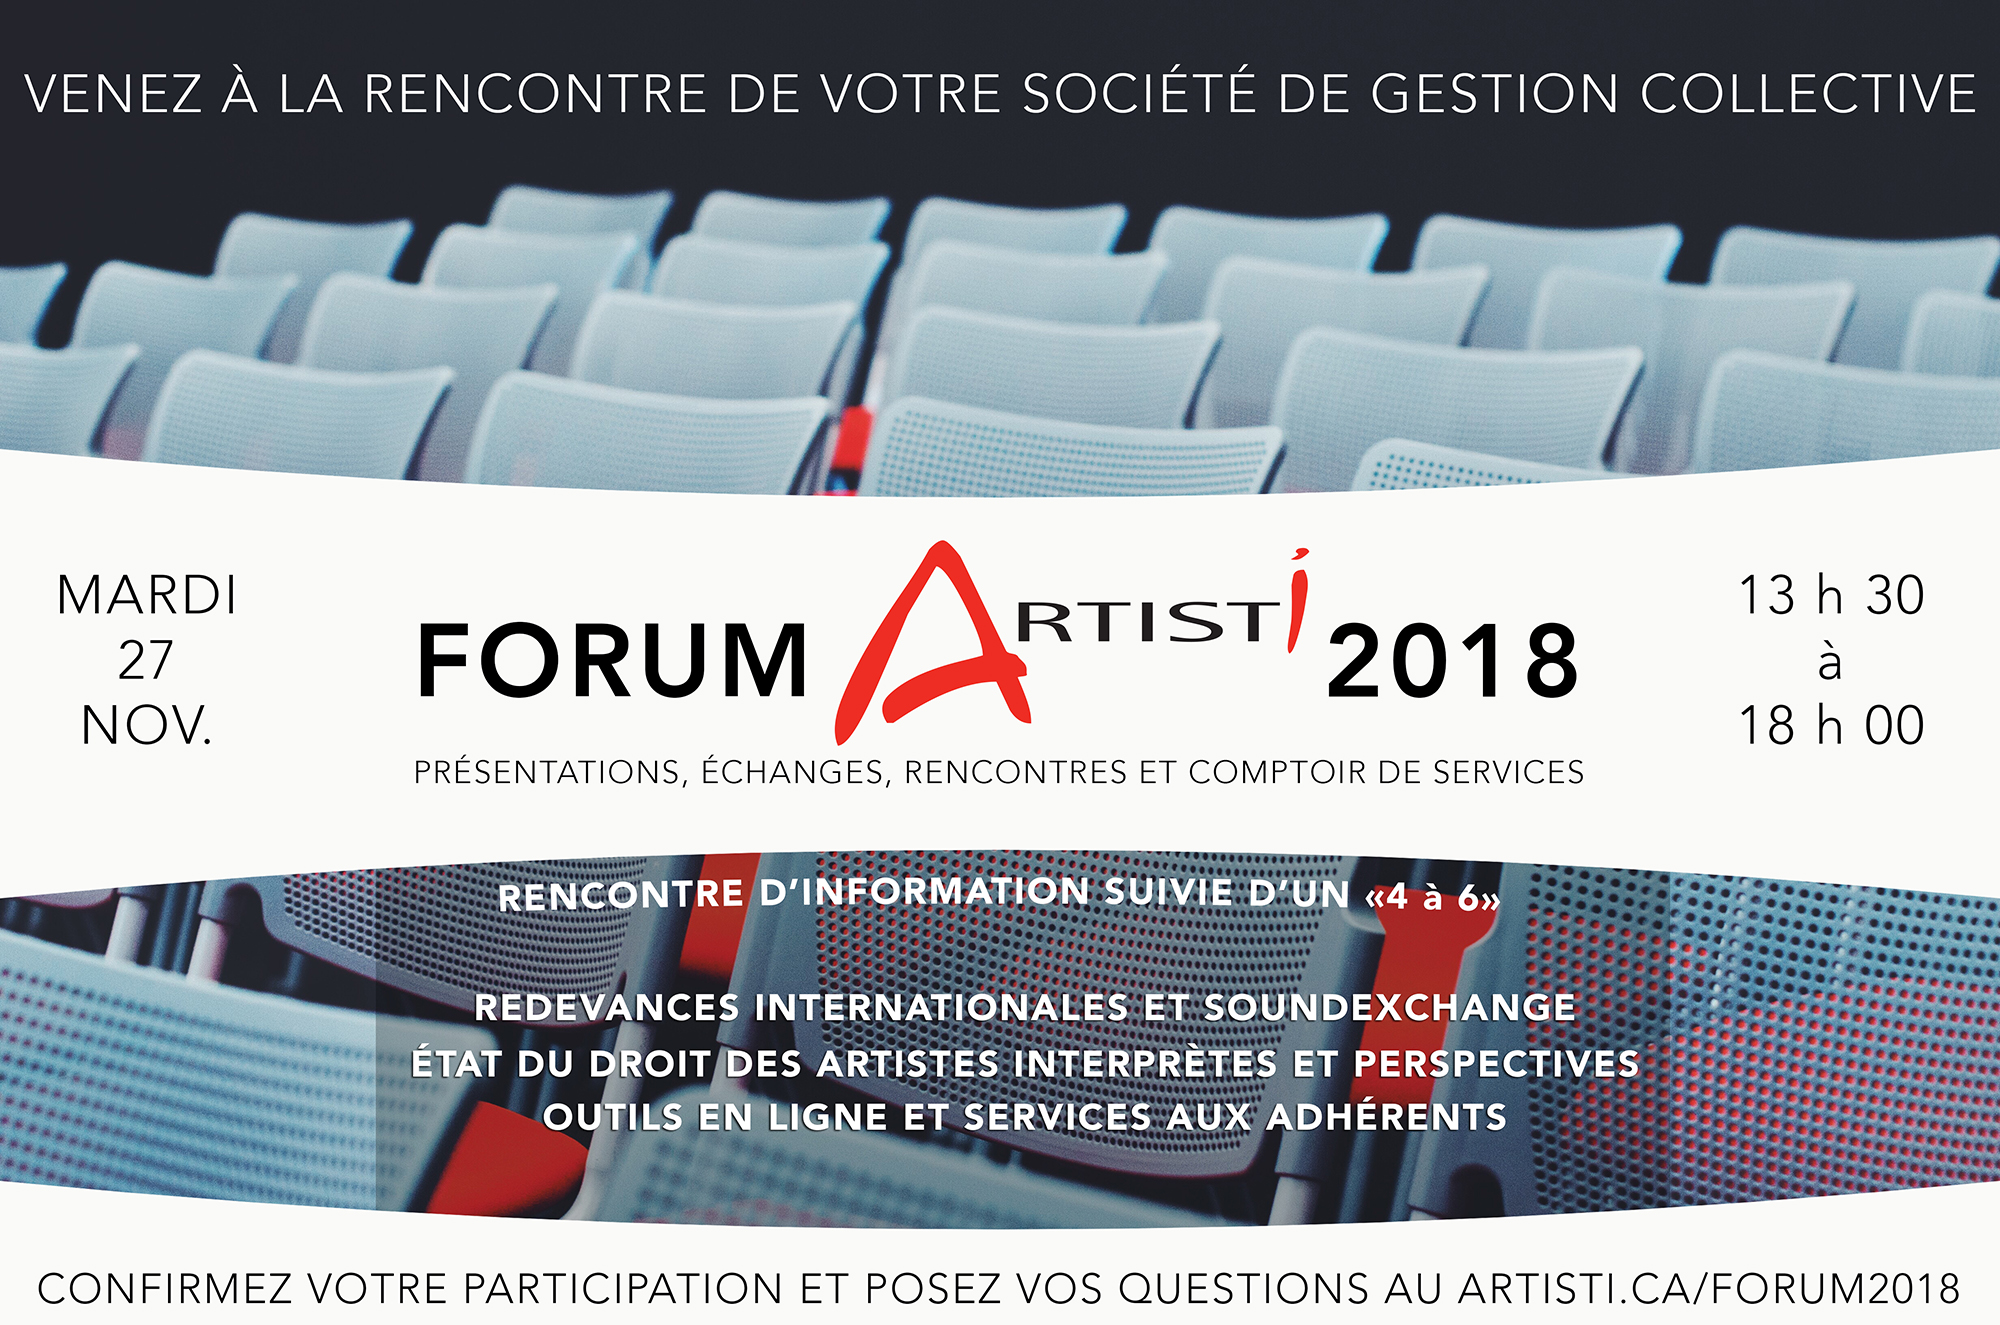 Forum Artisti 2018 – 1ère édition